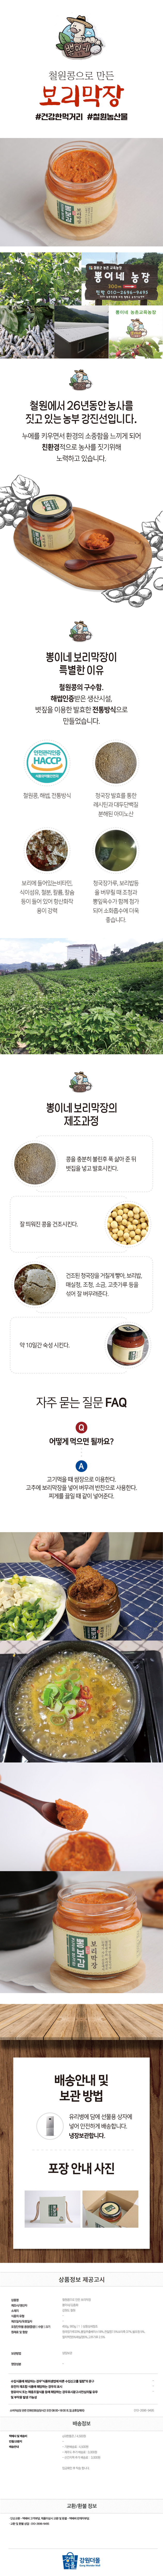 뽕이네 철원 오대쌀 철원콩 보리막장 막장 보리 건강한먹거리 철원농산물 친환경